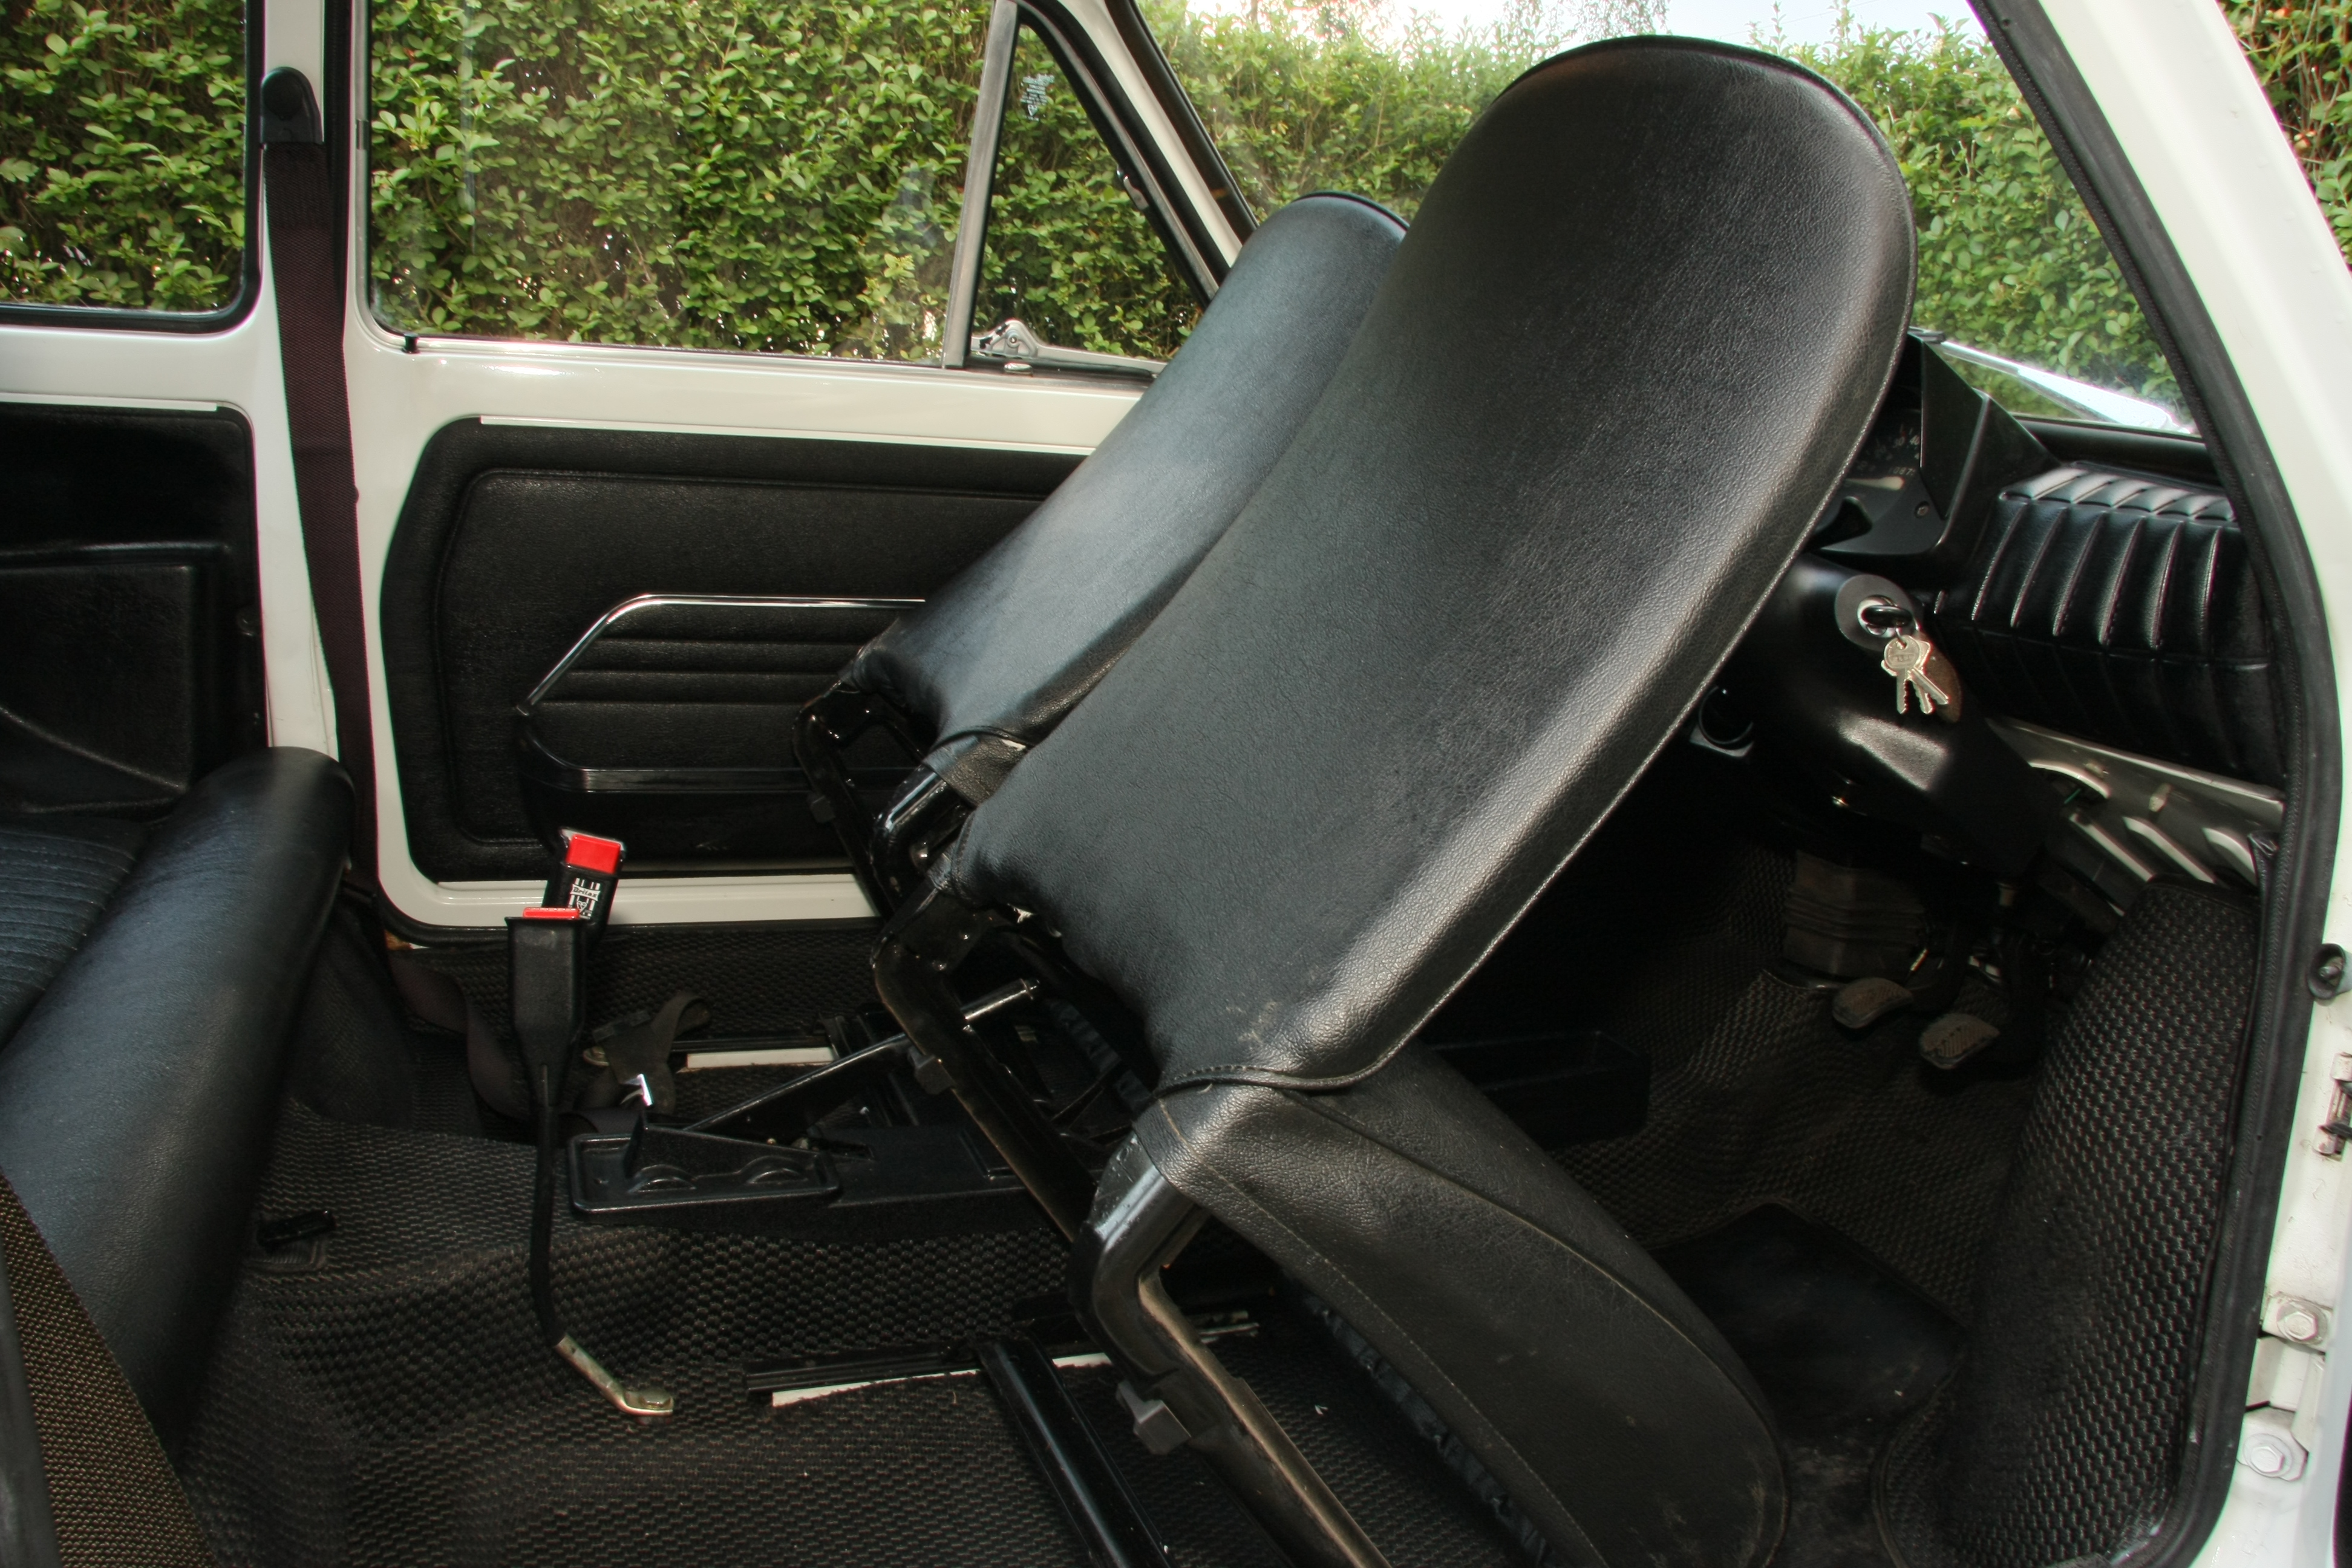 FIAT 126 interior